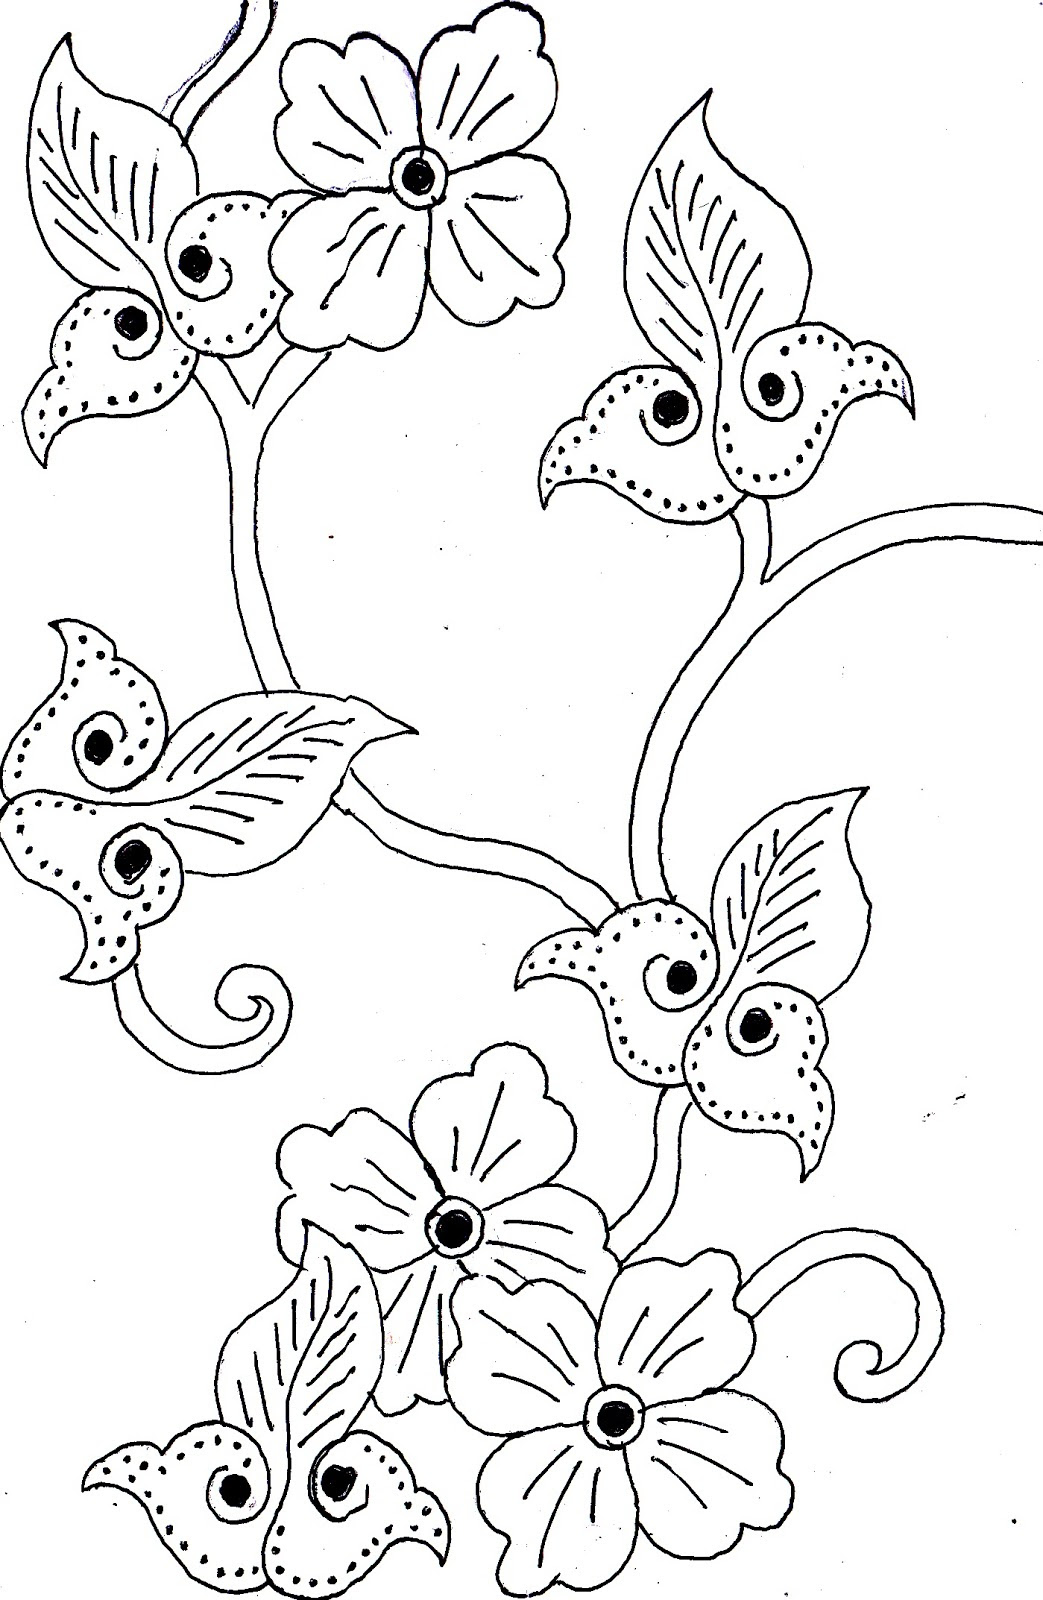 Gambar Motif Batik  Bunga  Simple Contoh Motif Batik 